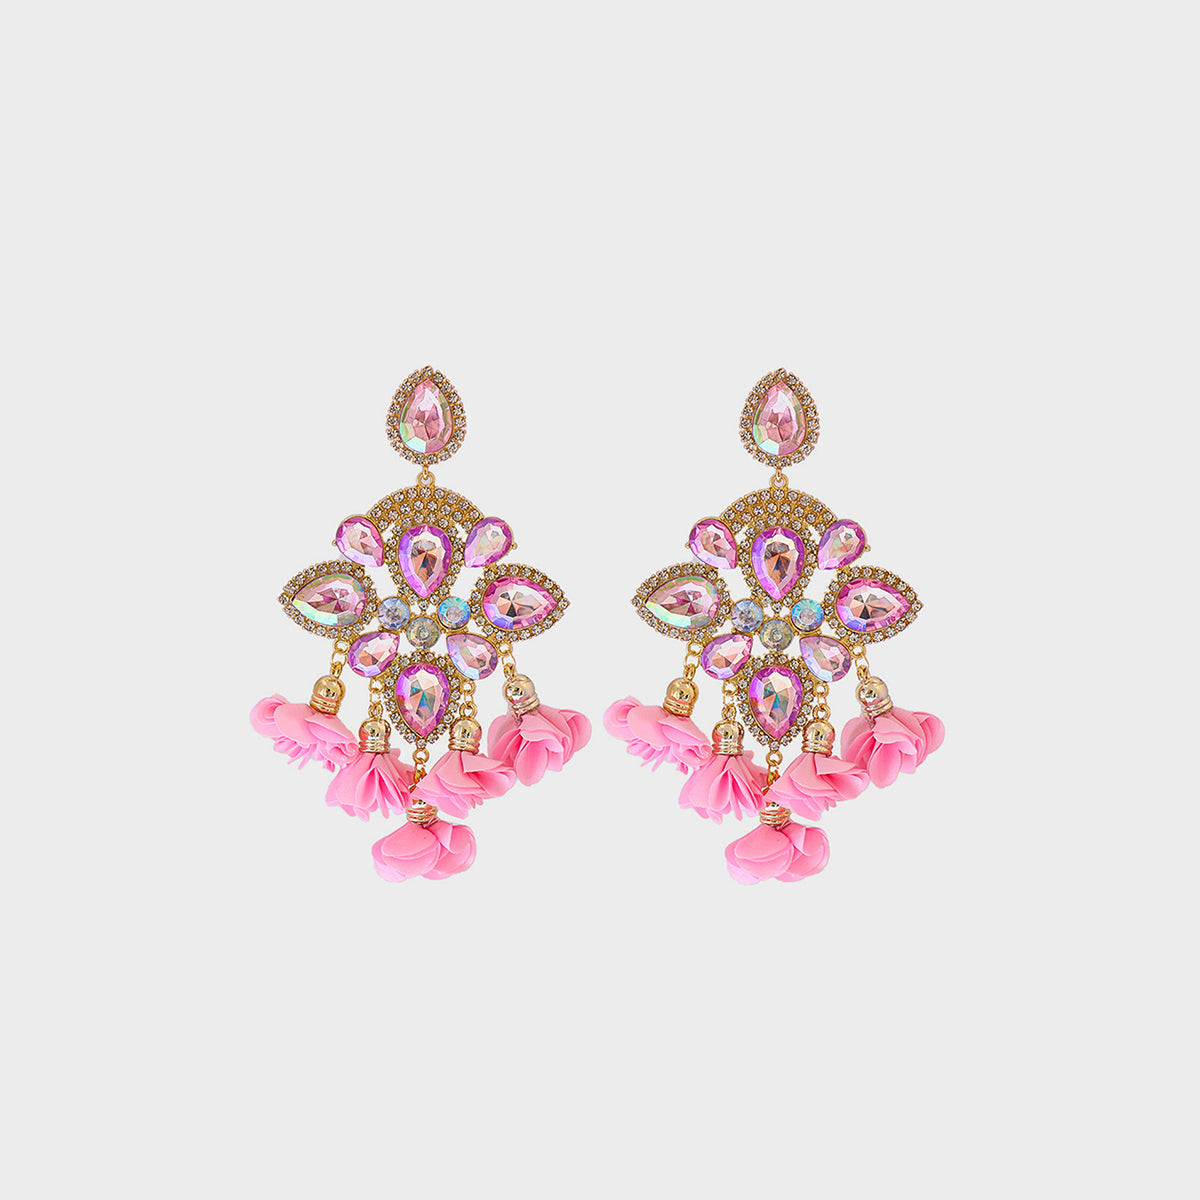 Flower Shape Rhinestone Alloy Dangle Earrings Pink One Size